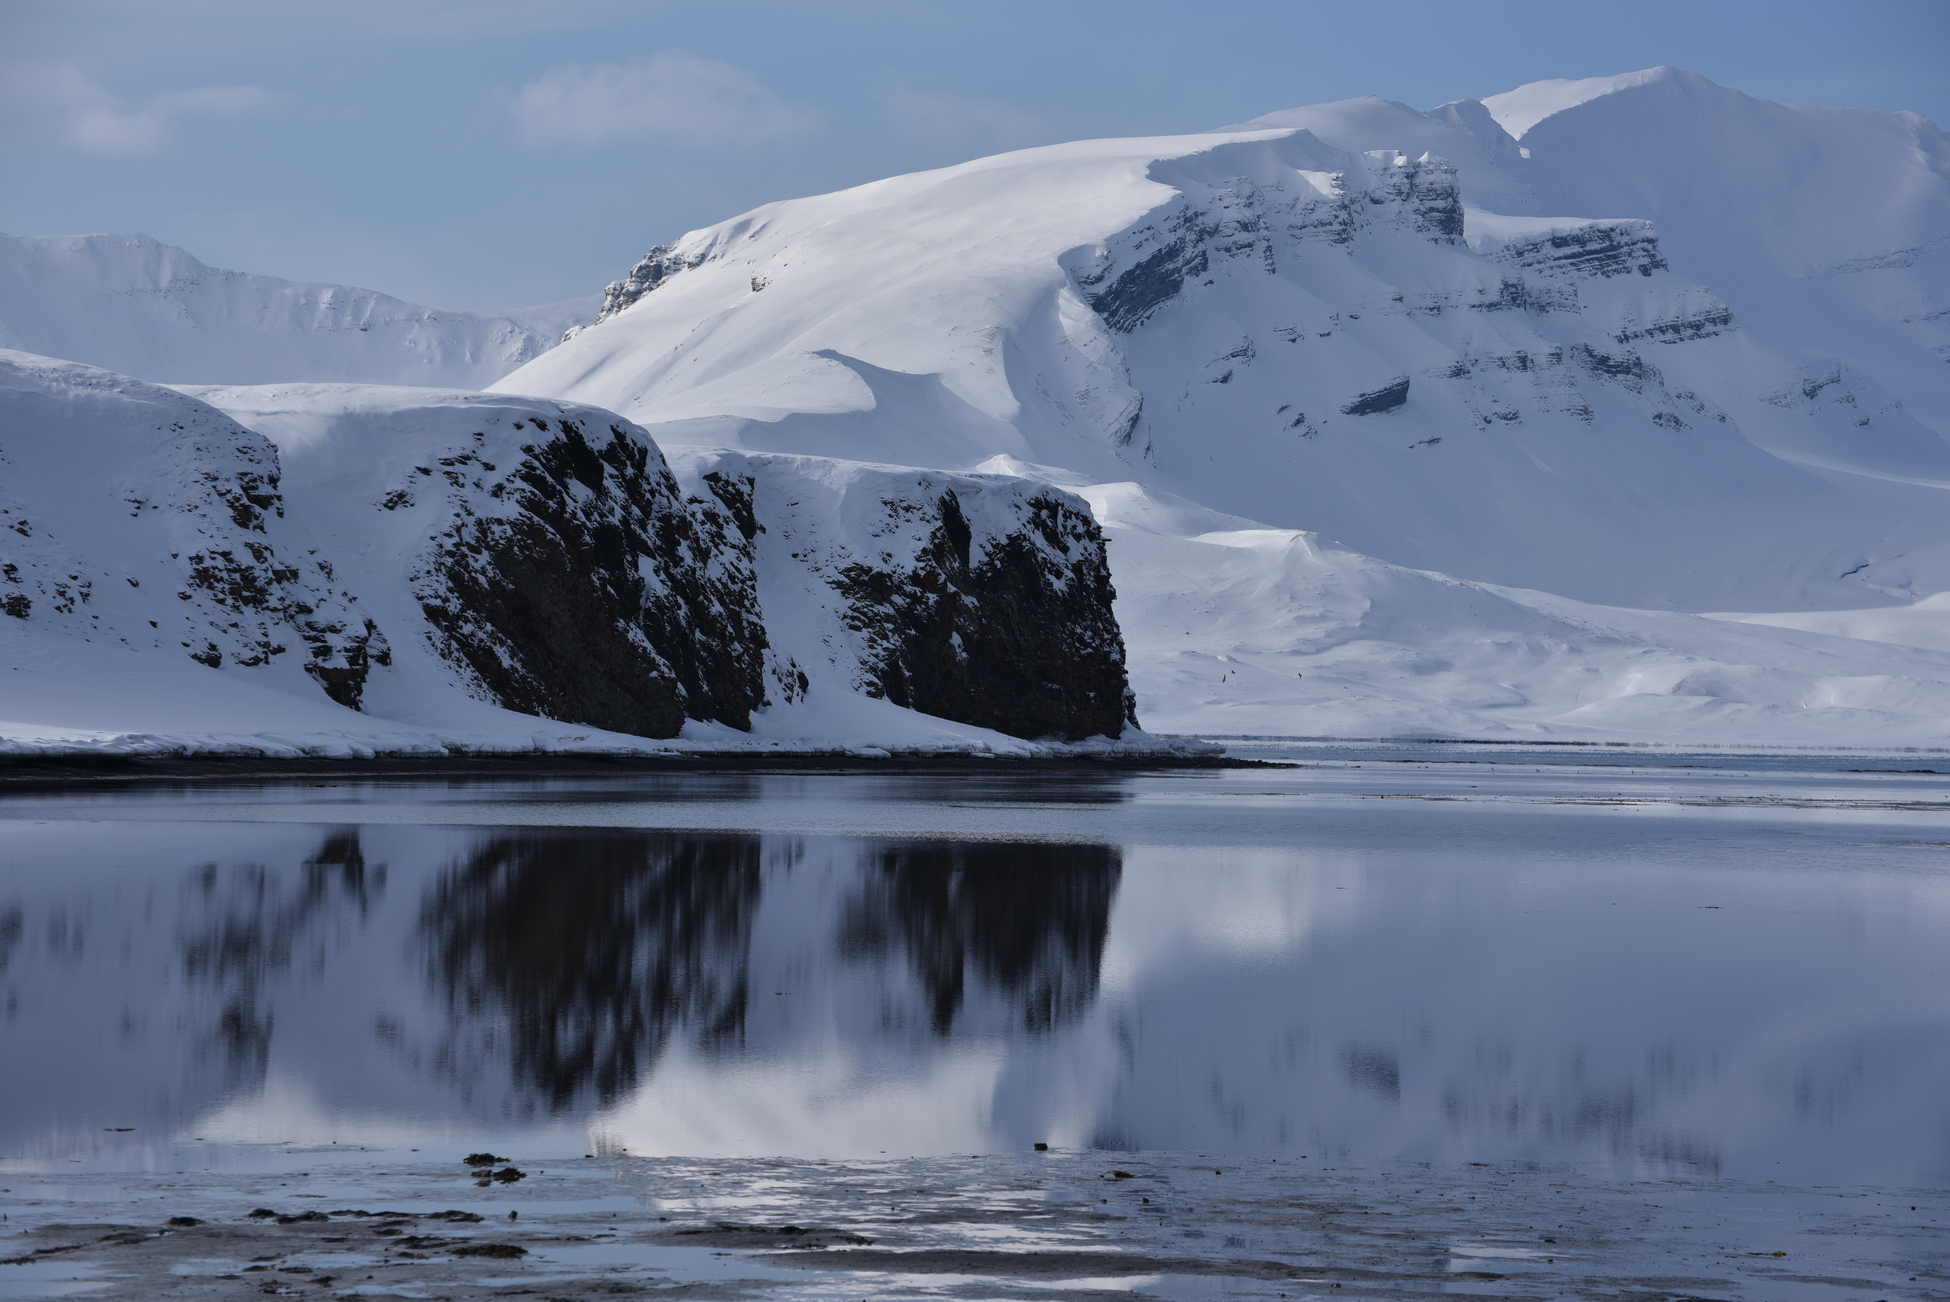 Арктика сегодня: круглогодичная навигация, погранконтроль и Канозерские петроглифы